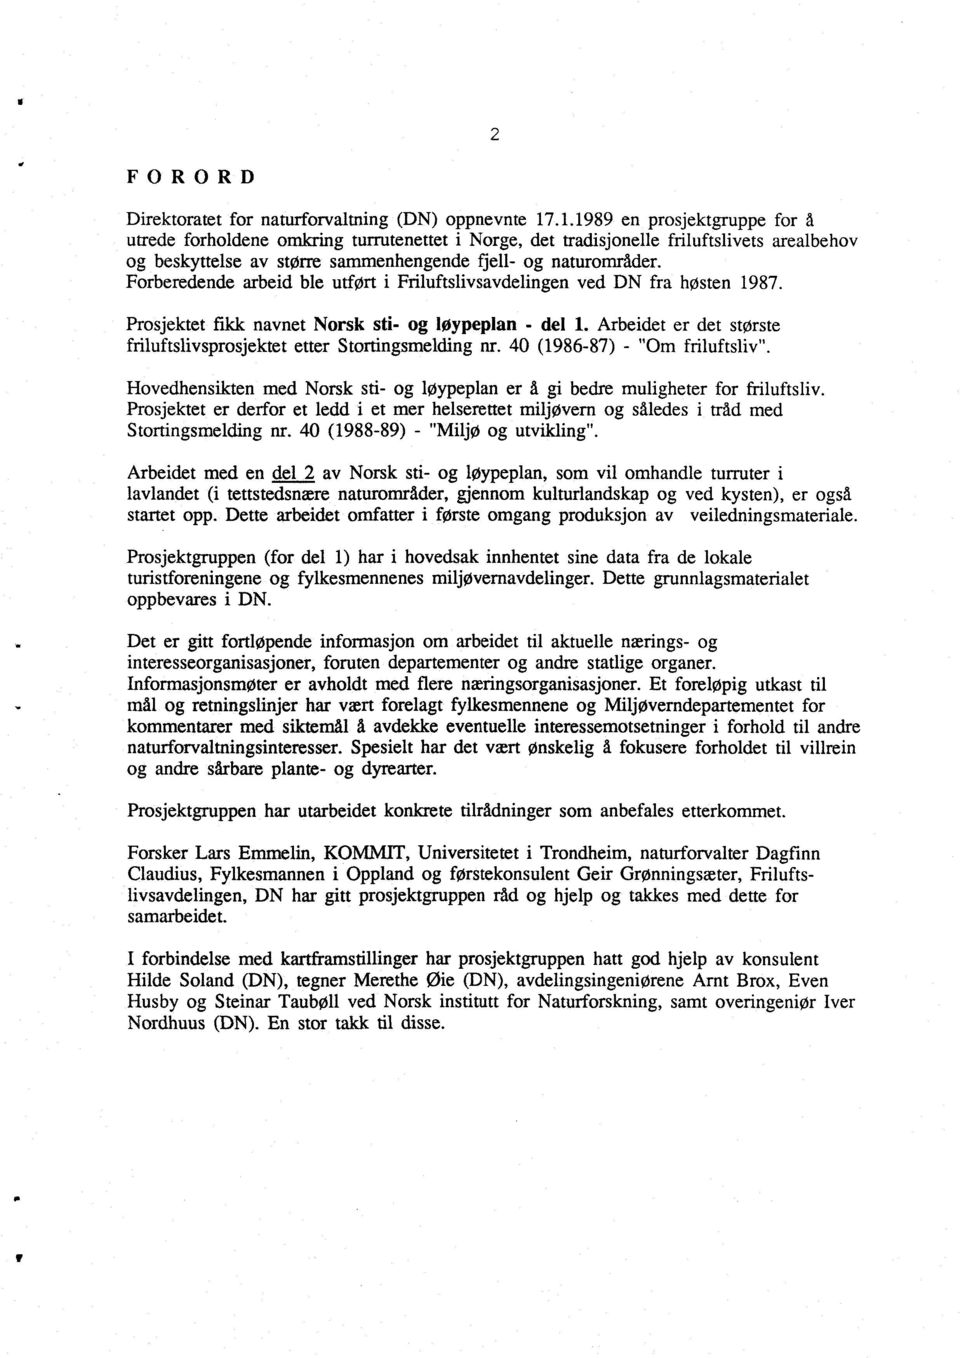 Forberedende arbeid ble utført i Friluftslivsavdelingen ved DN fra høsten 1987. Prosjektet fikk navnet Norsk sti- og løypeplan - del 1.